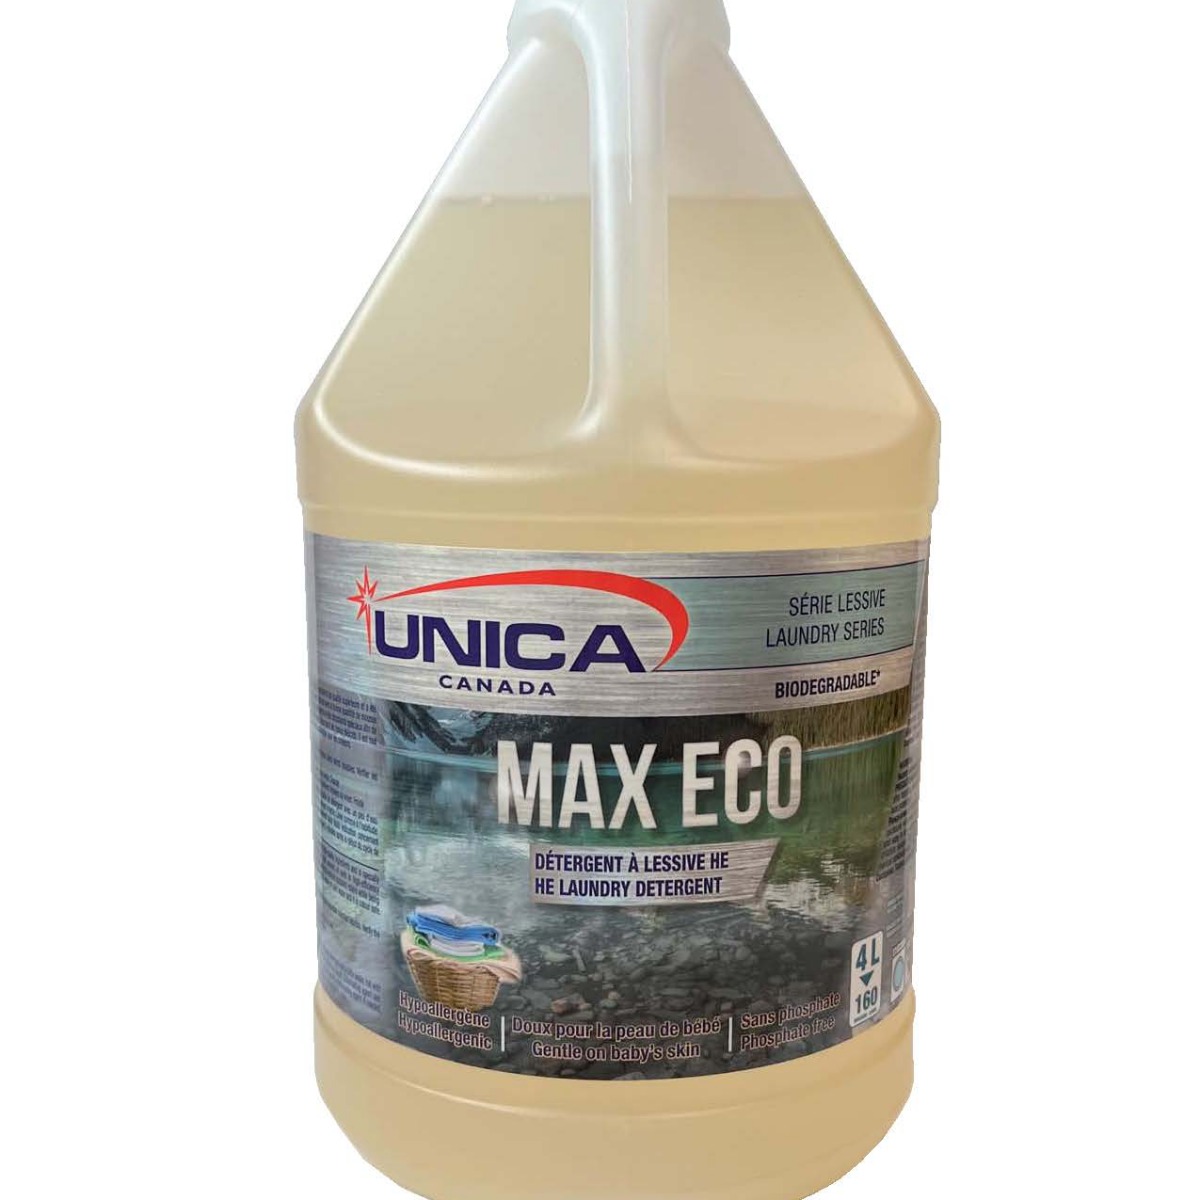 Max Eco